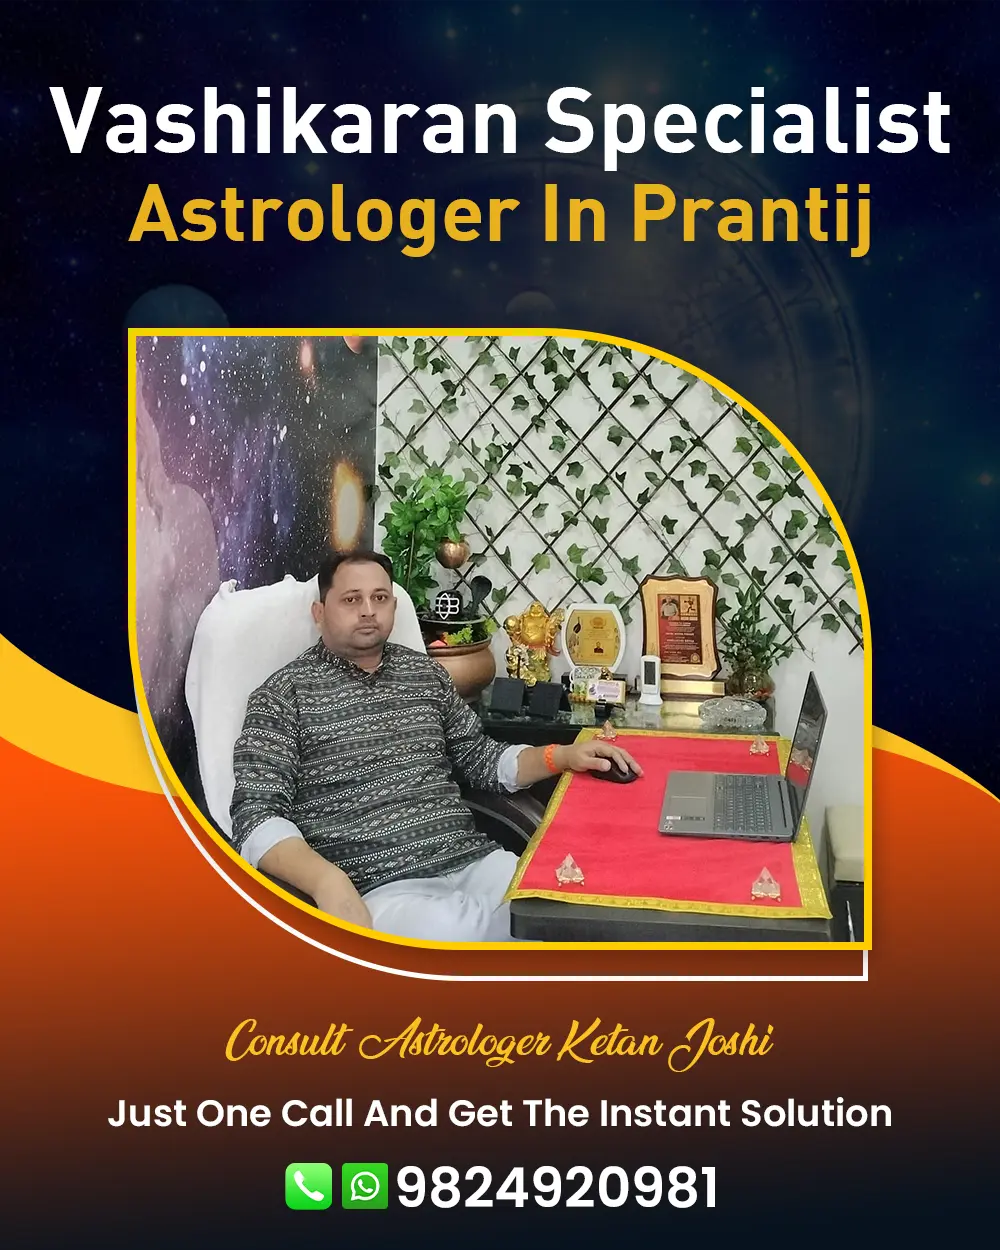 Vashikaran Specialist Astrologer In Prantij